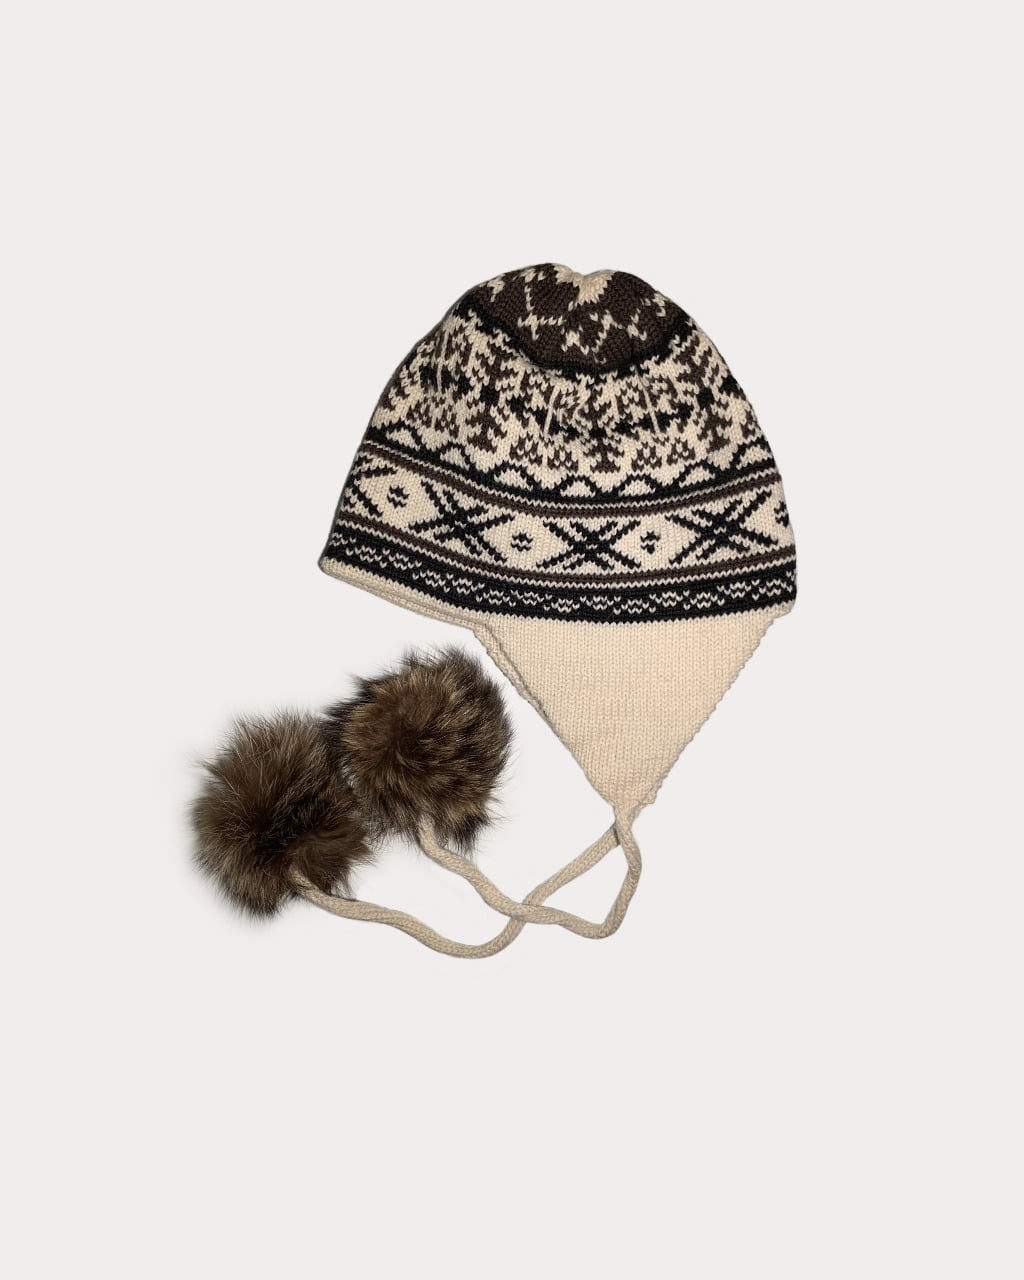 Knit Hat with Pom Pom